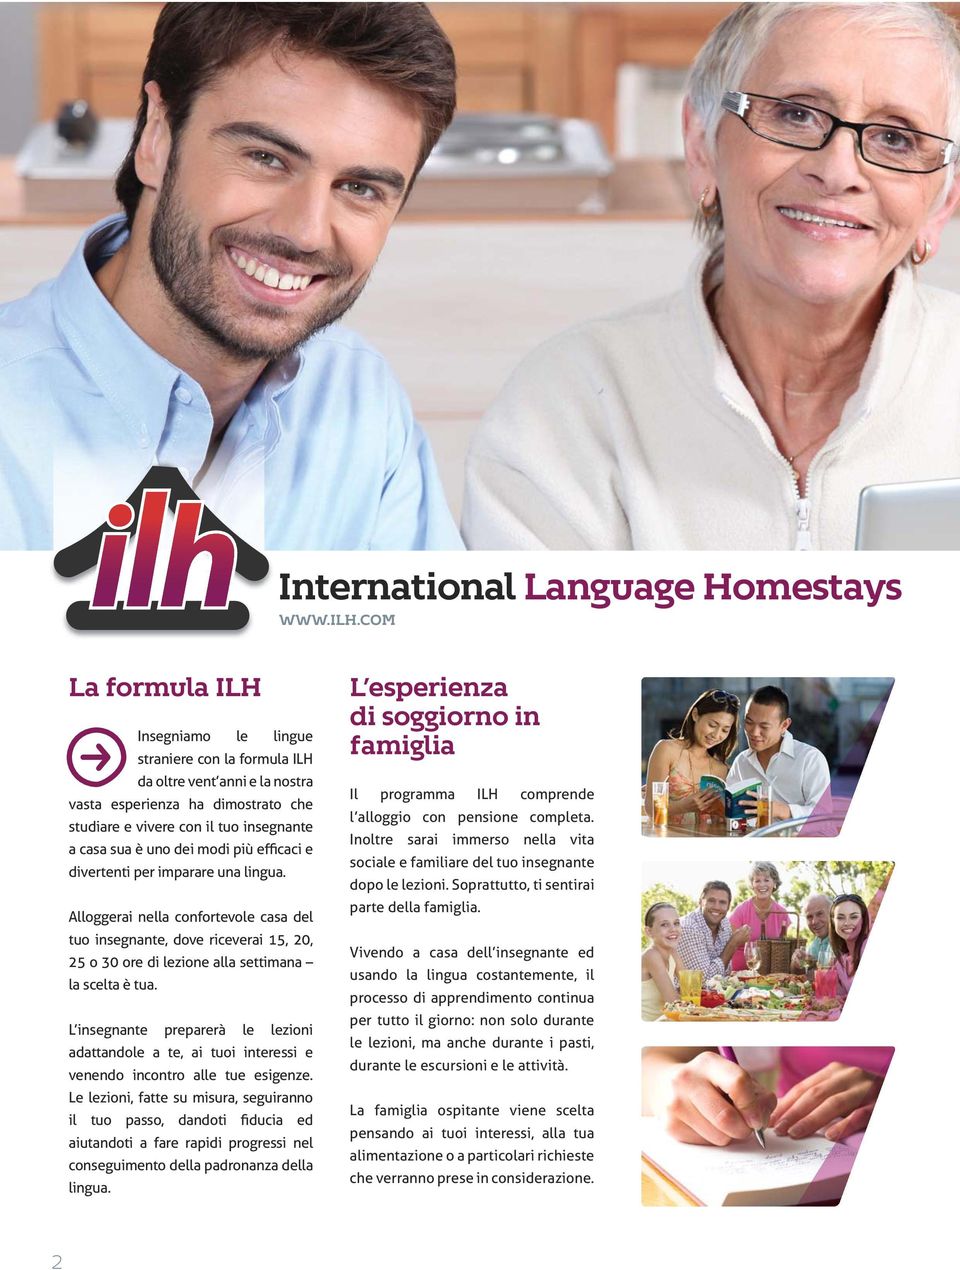 insegnante a casa sua è uno dei modi più efficaci e divertenti per imparare una lingua.